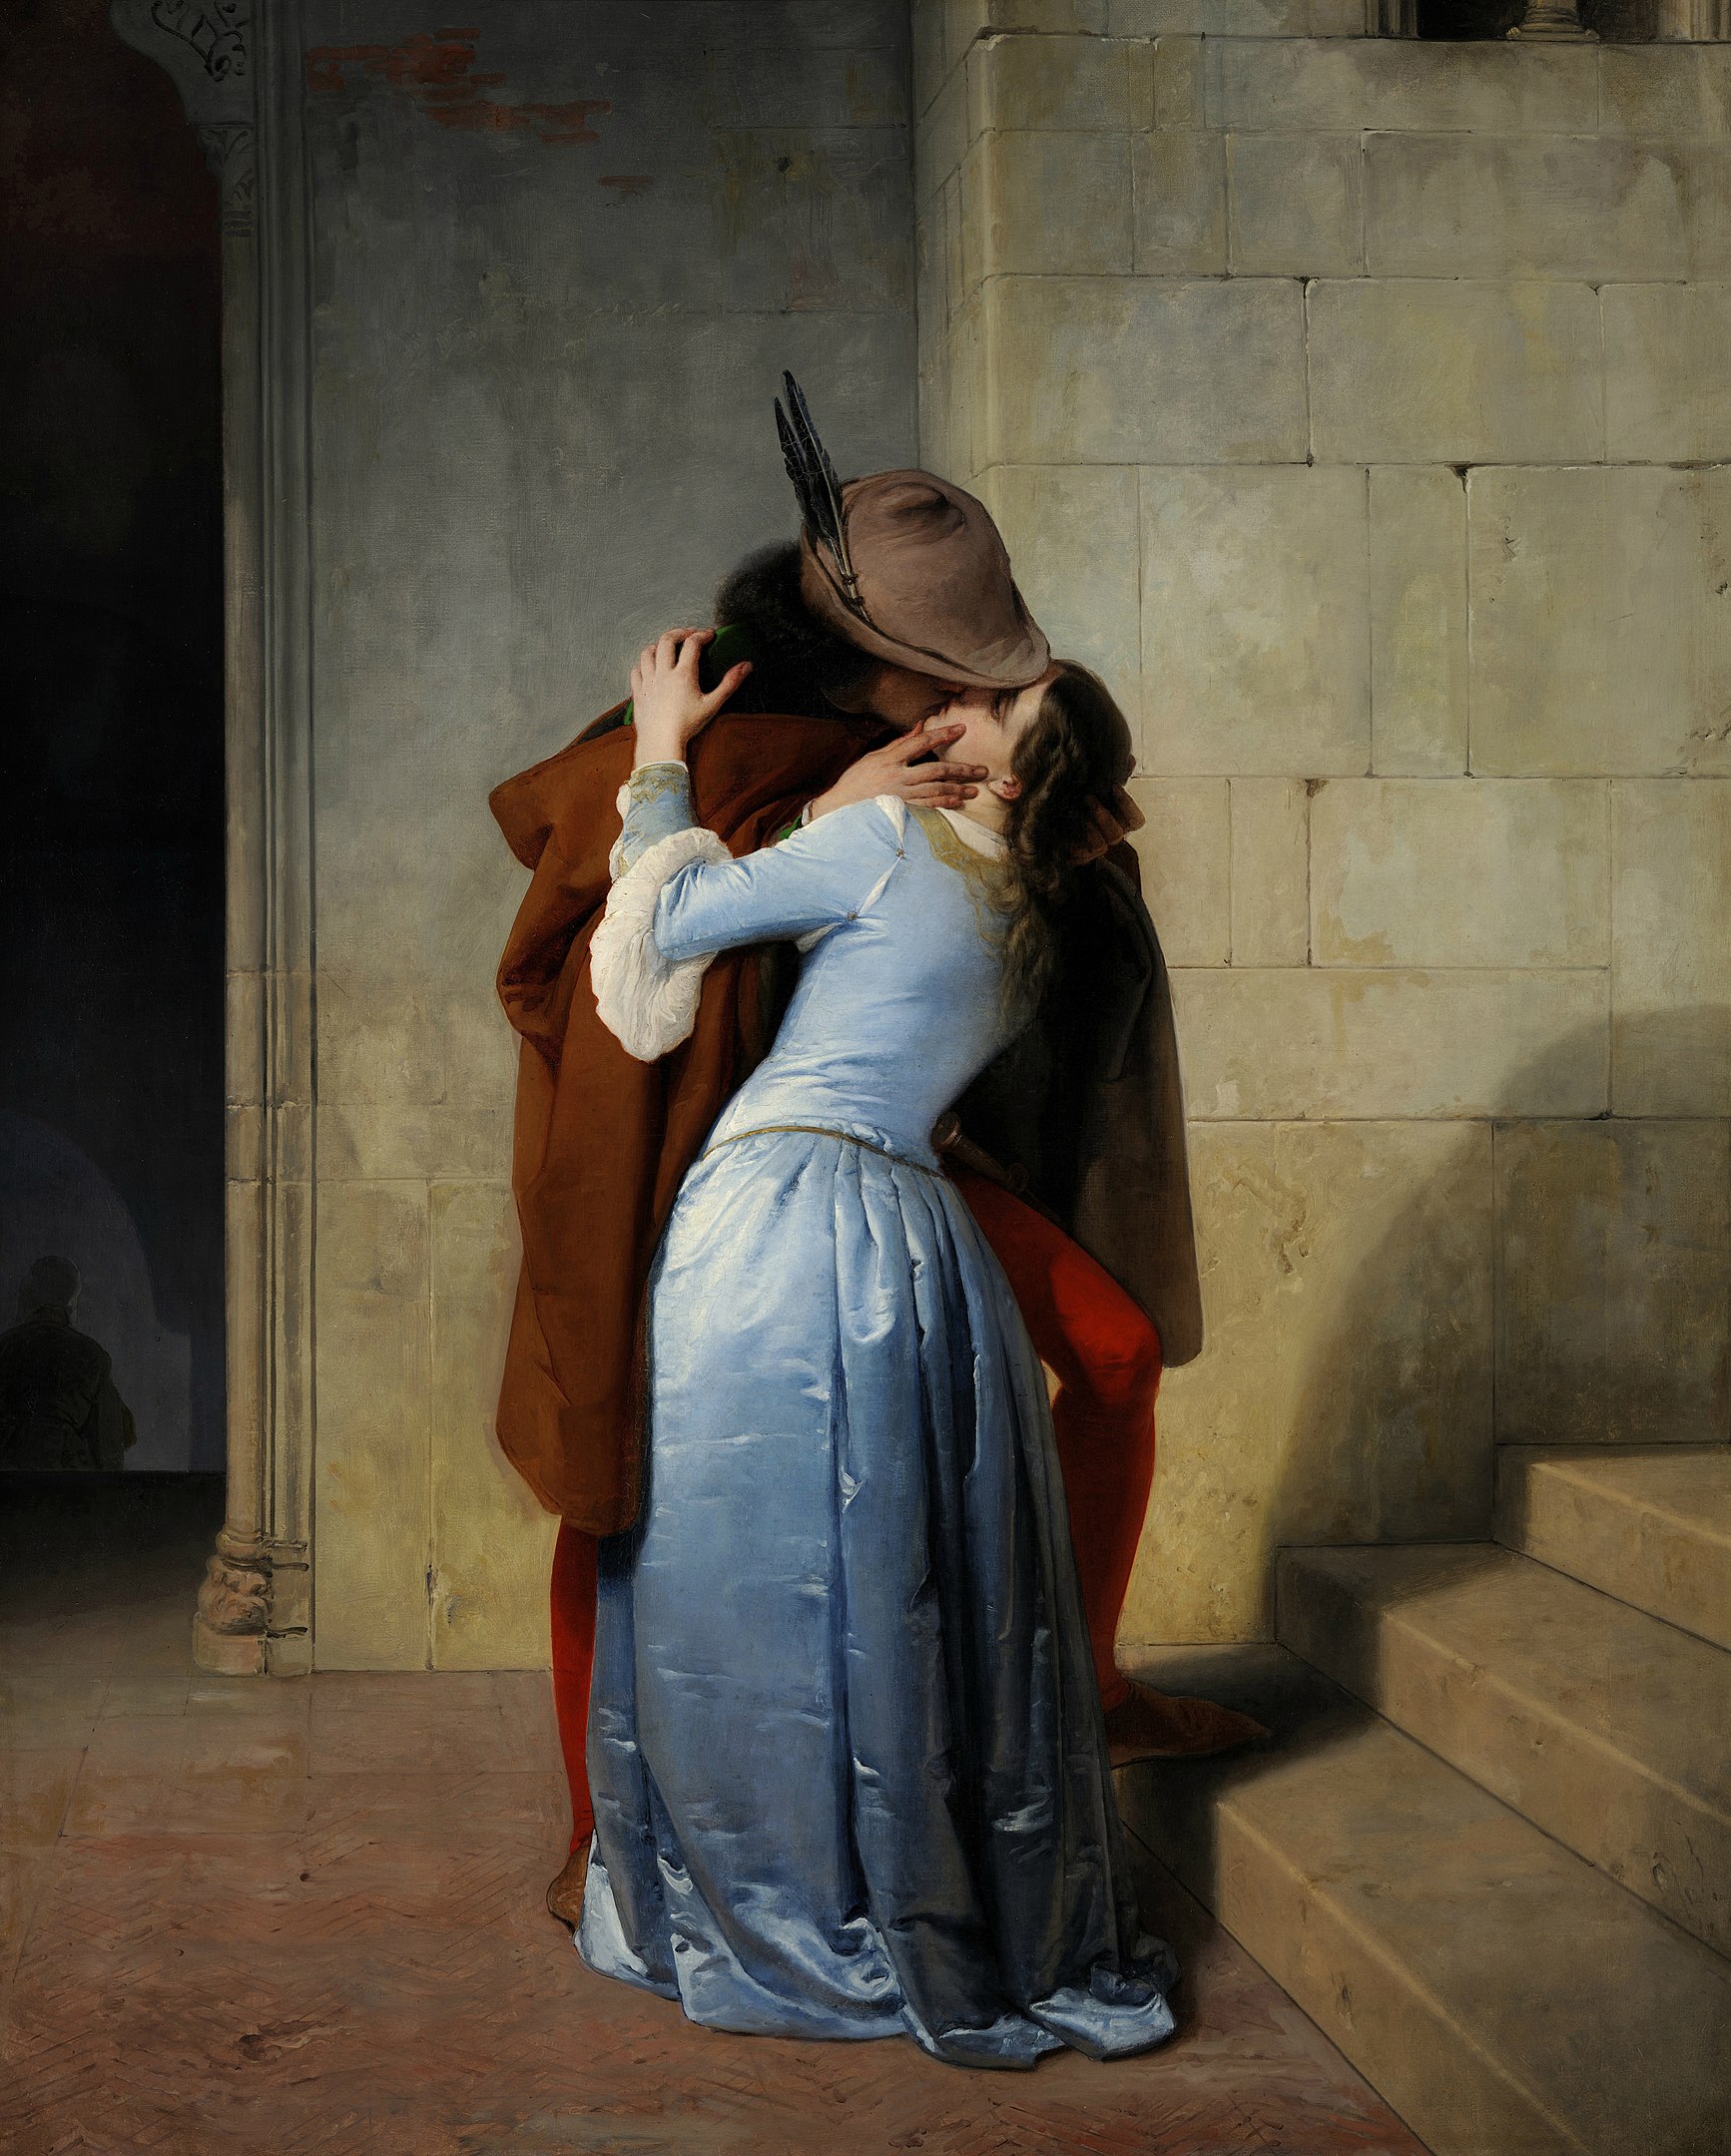 القبلة by Francesco Hayez - 1859 م - 110 في 88 سم 